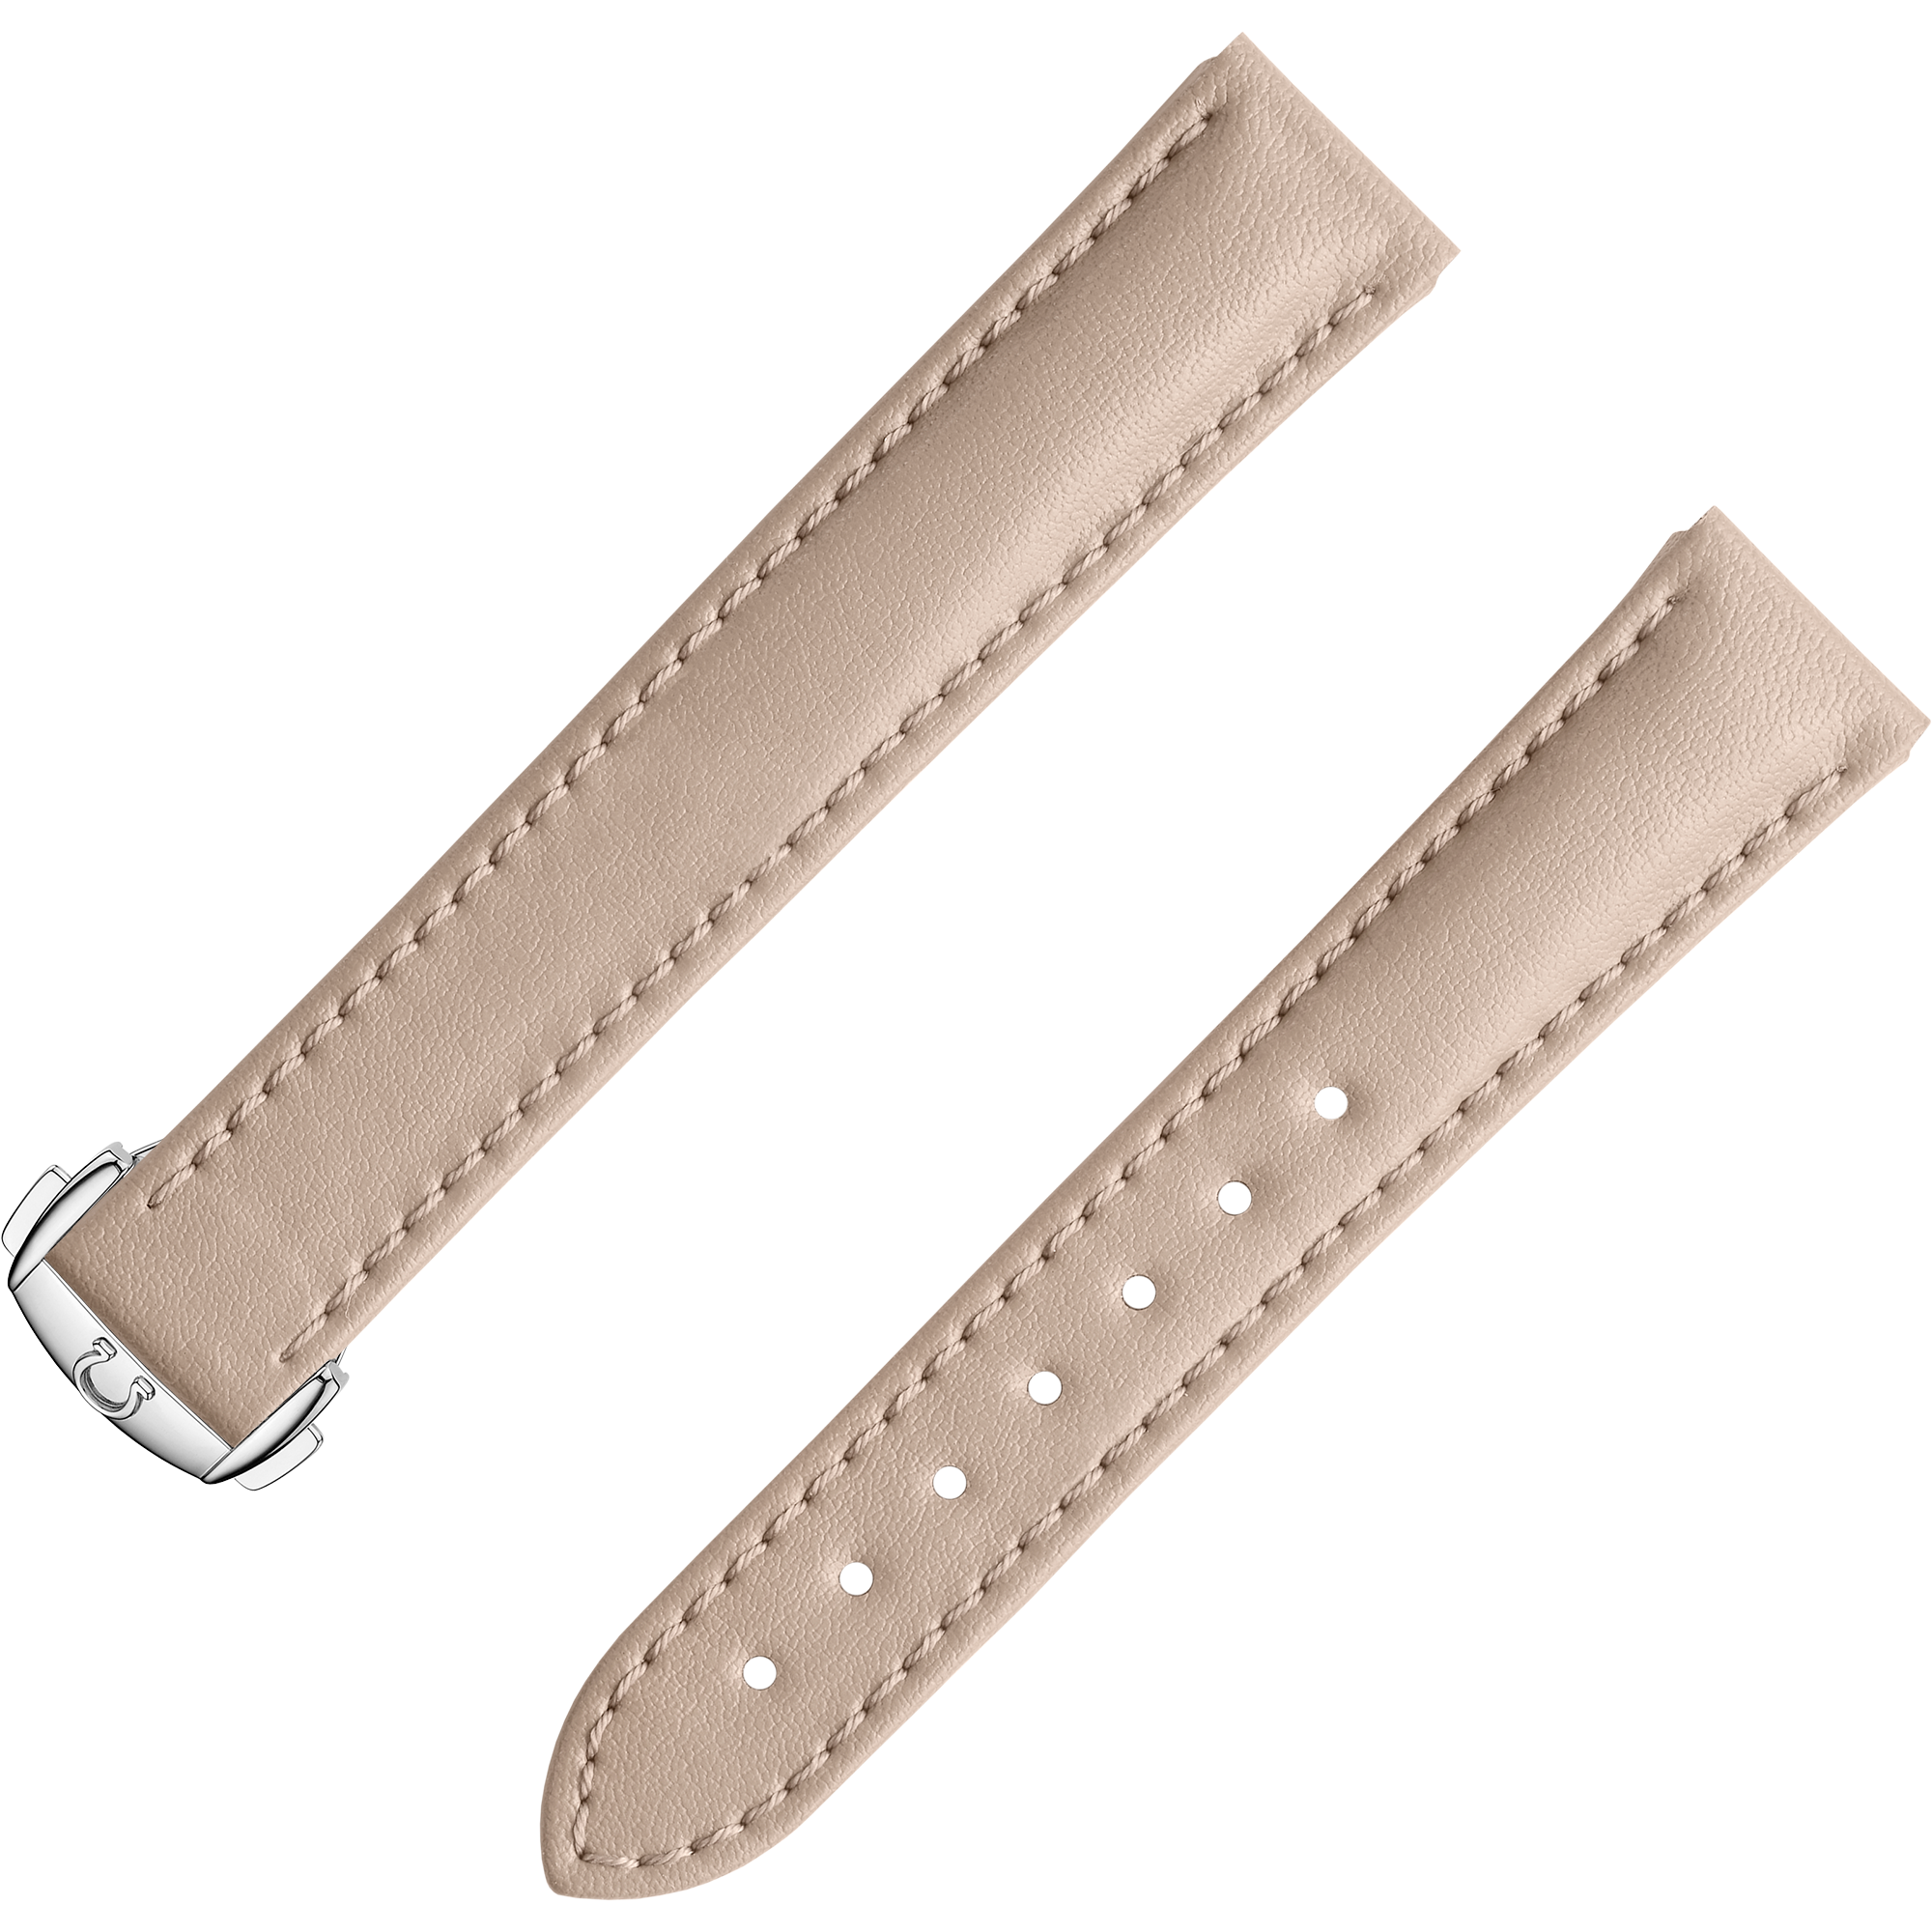 Two-piece strap - Beige vegan strap with foldover clasp - 032Z017132W